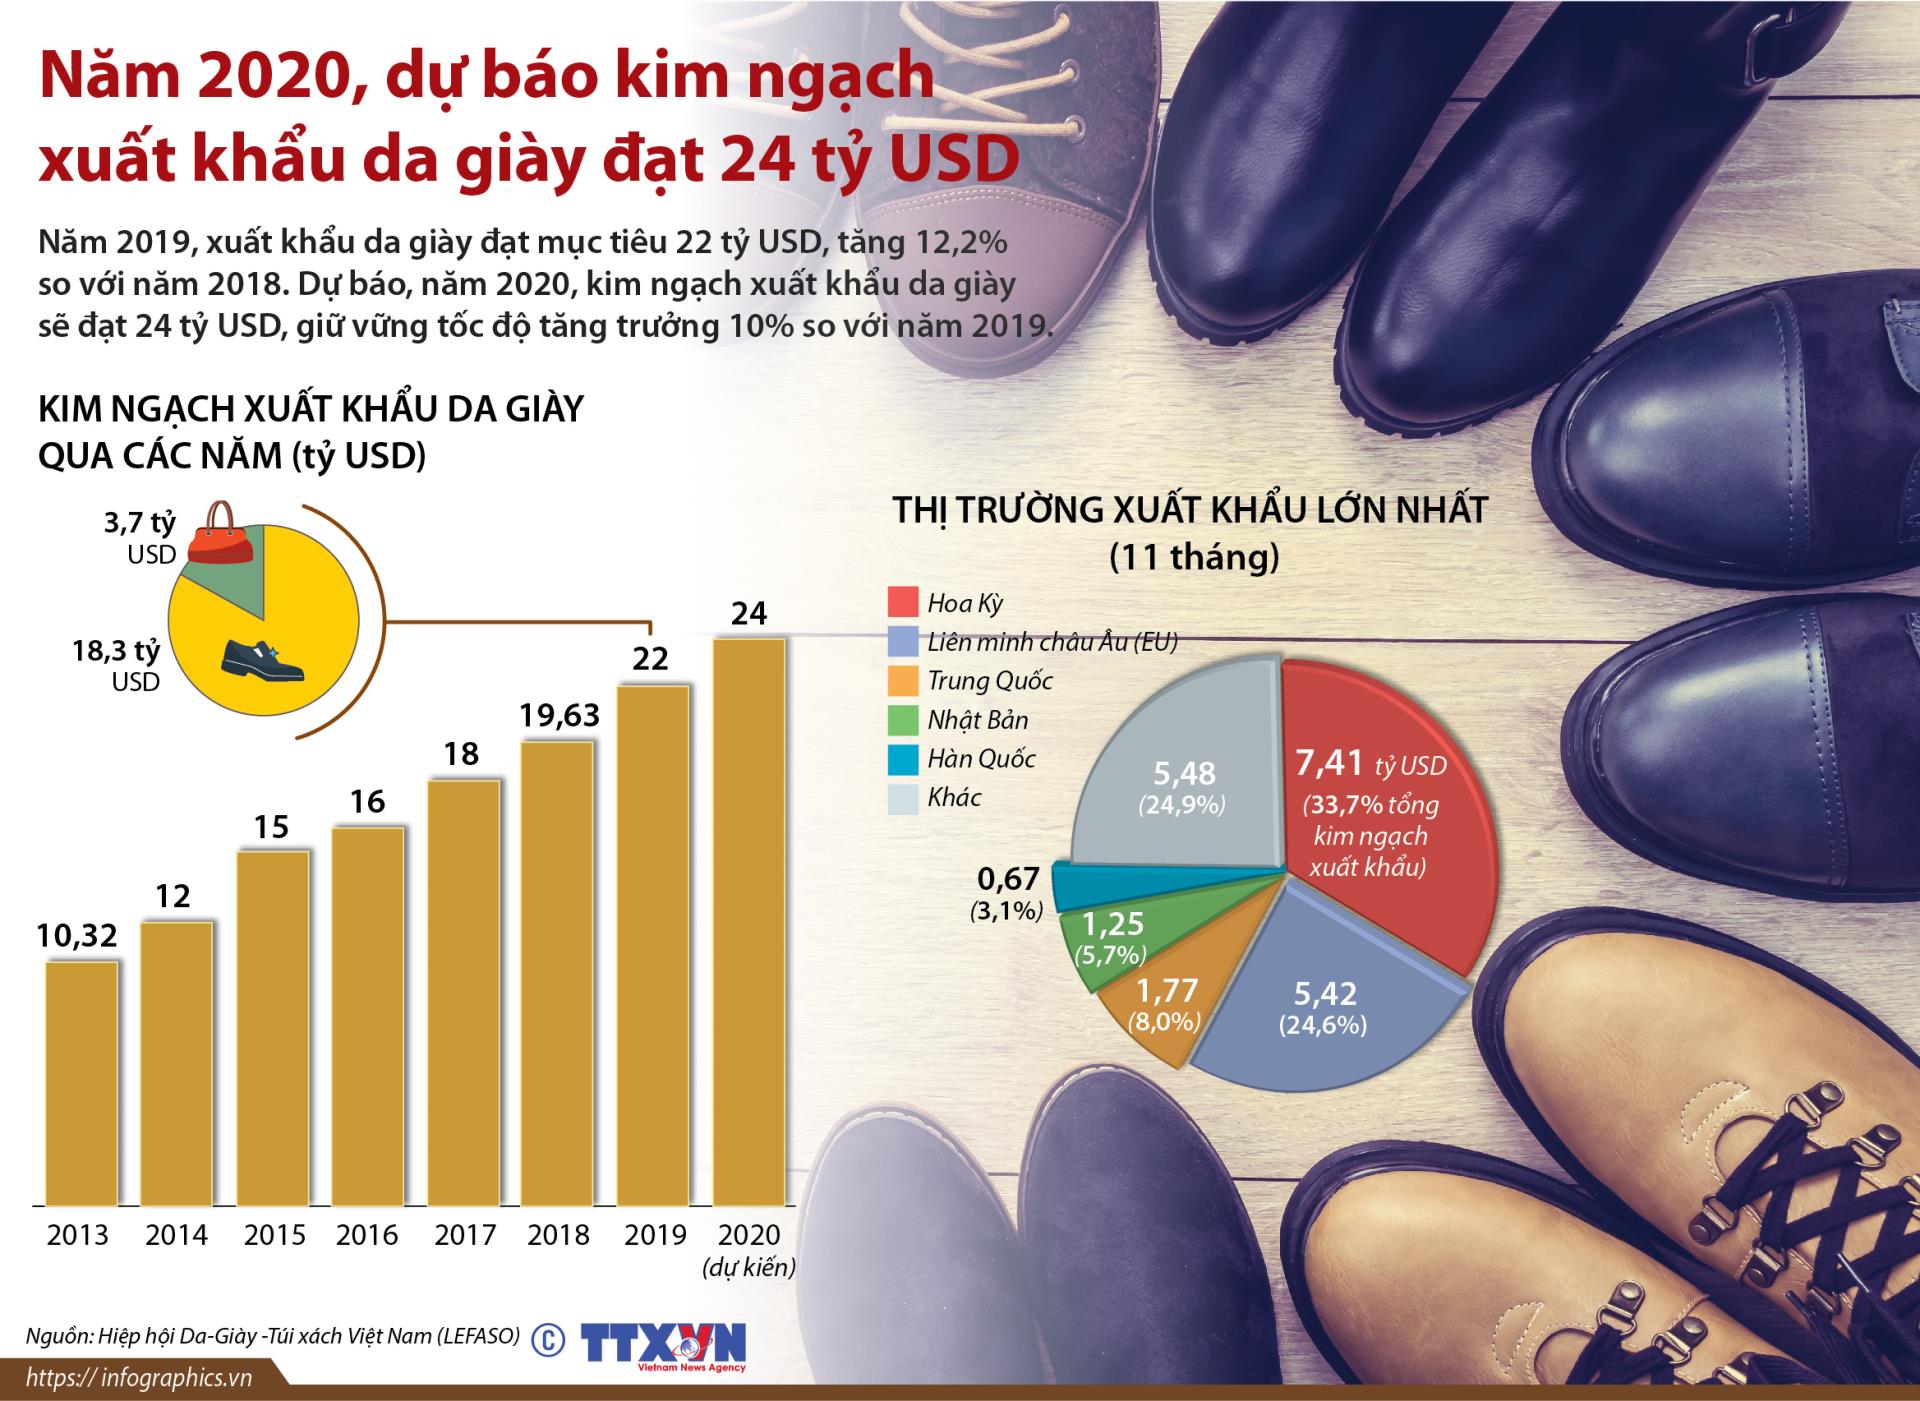 Năm 2020, dự báo kim ngạch xuất khẩu da giày đạt 24 tỷ USD